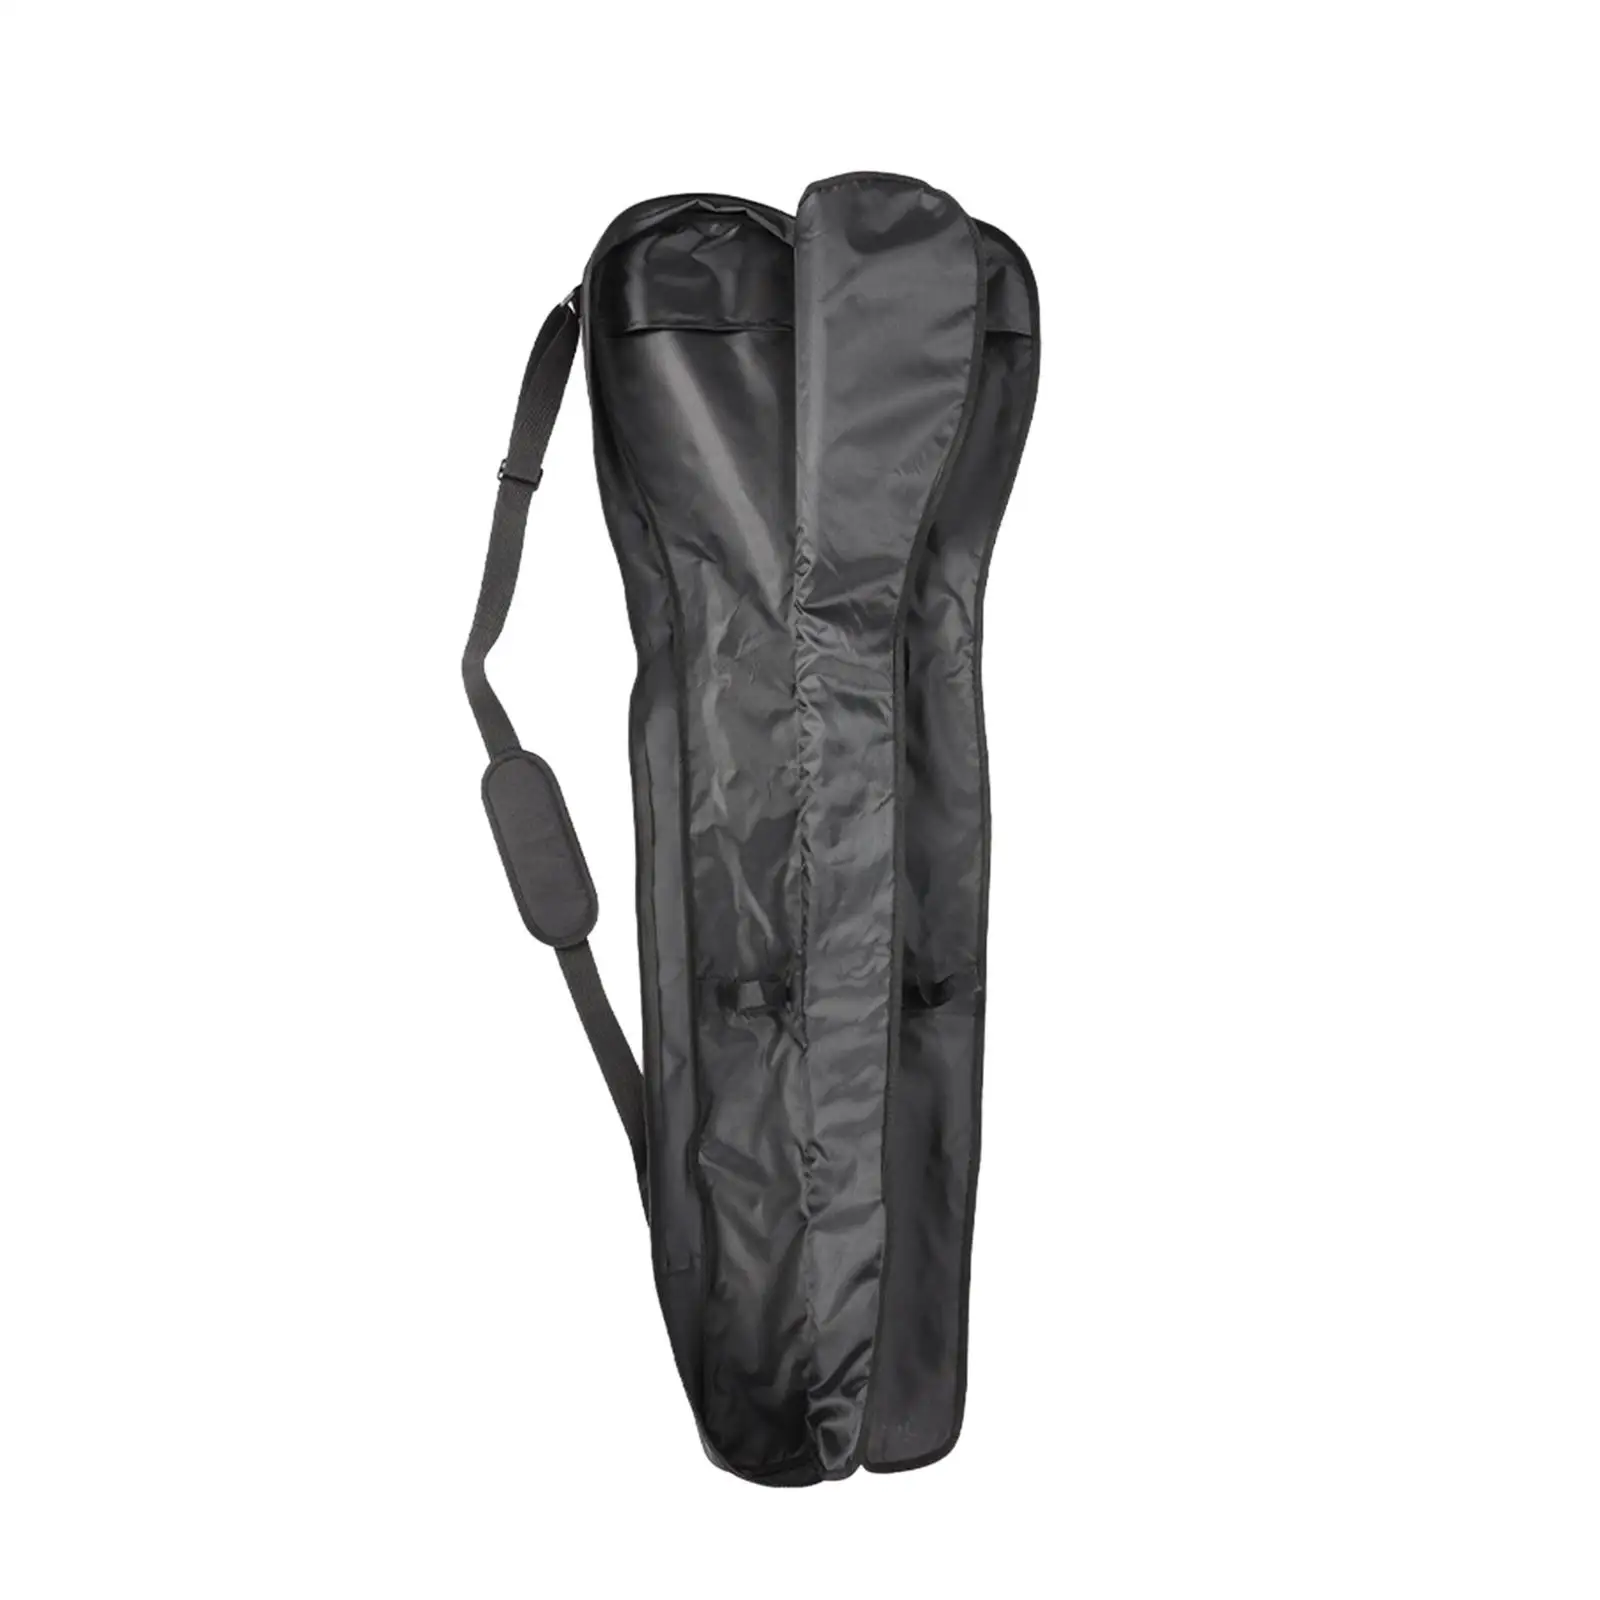 Portable Boat Paddle Bag Holder Protective with Shoulder Strap Case Split Paddle